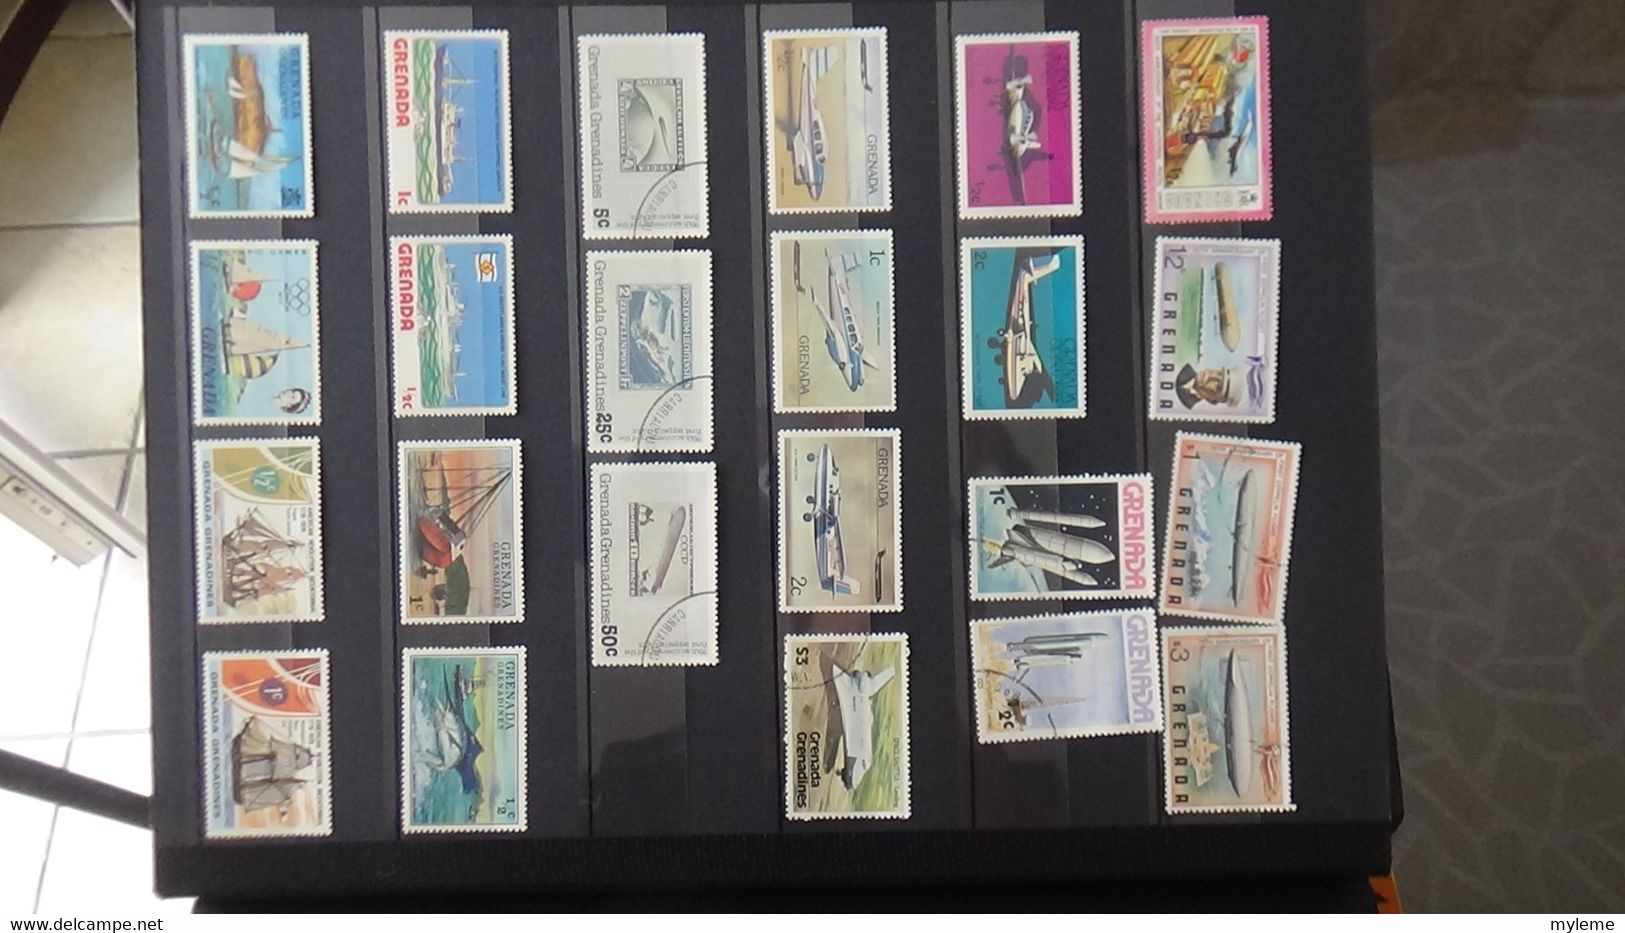 V65 Collection de timbres en majorité oblitérés de différents pays dont Ethiopie ...  A saisir !!!